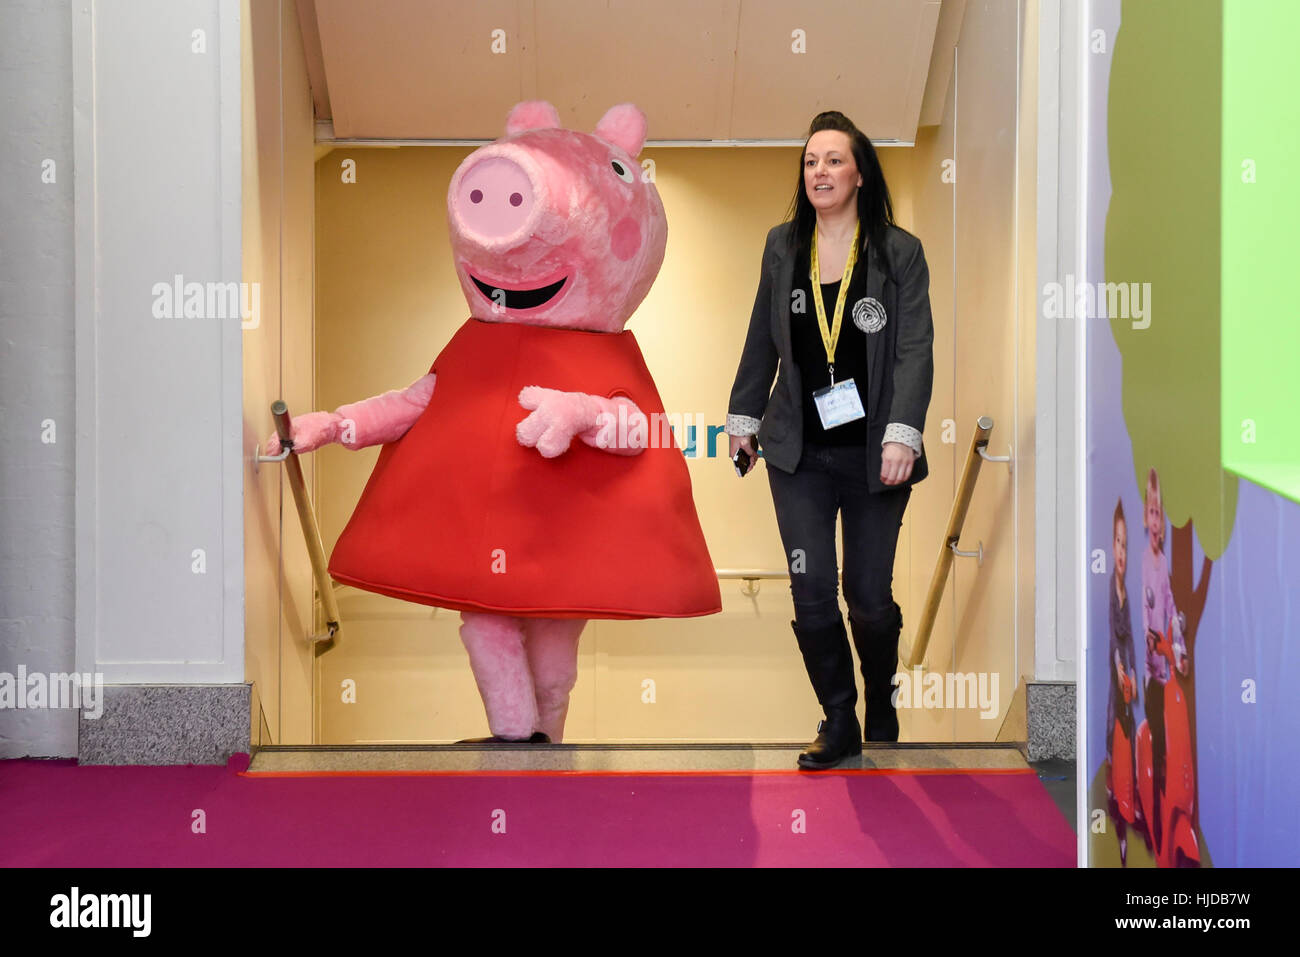 Extranjero Competitivo Alarmante Londres, Reino Unido. 24 ene, 2017. Un murgas Peppa Pig participa en un  paseo en el día de la inauguración de la Toy Fair 2017, teniendo lugar en  Kensington Olympia. La feria